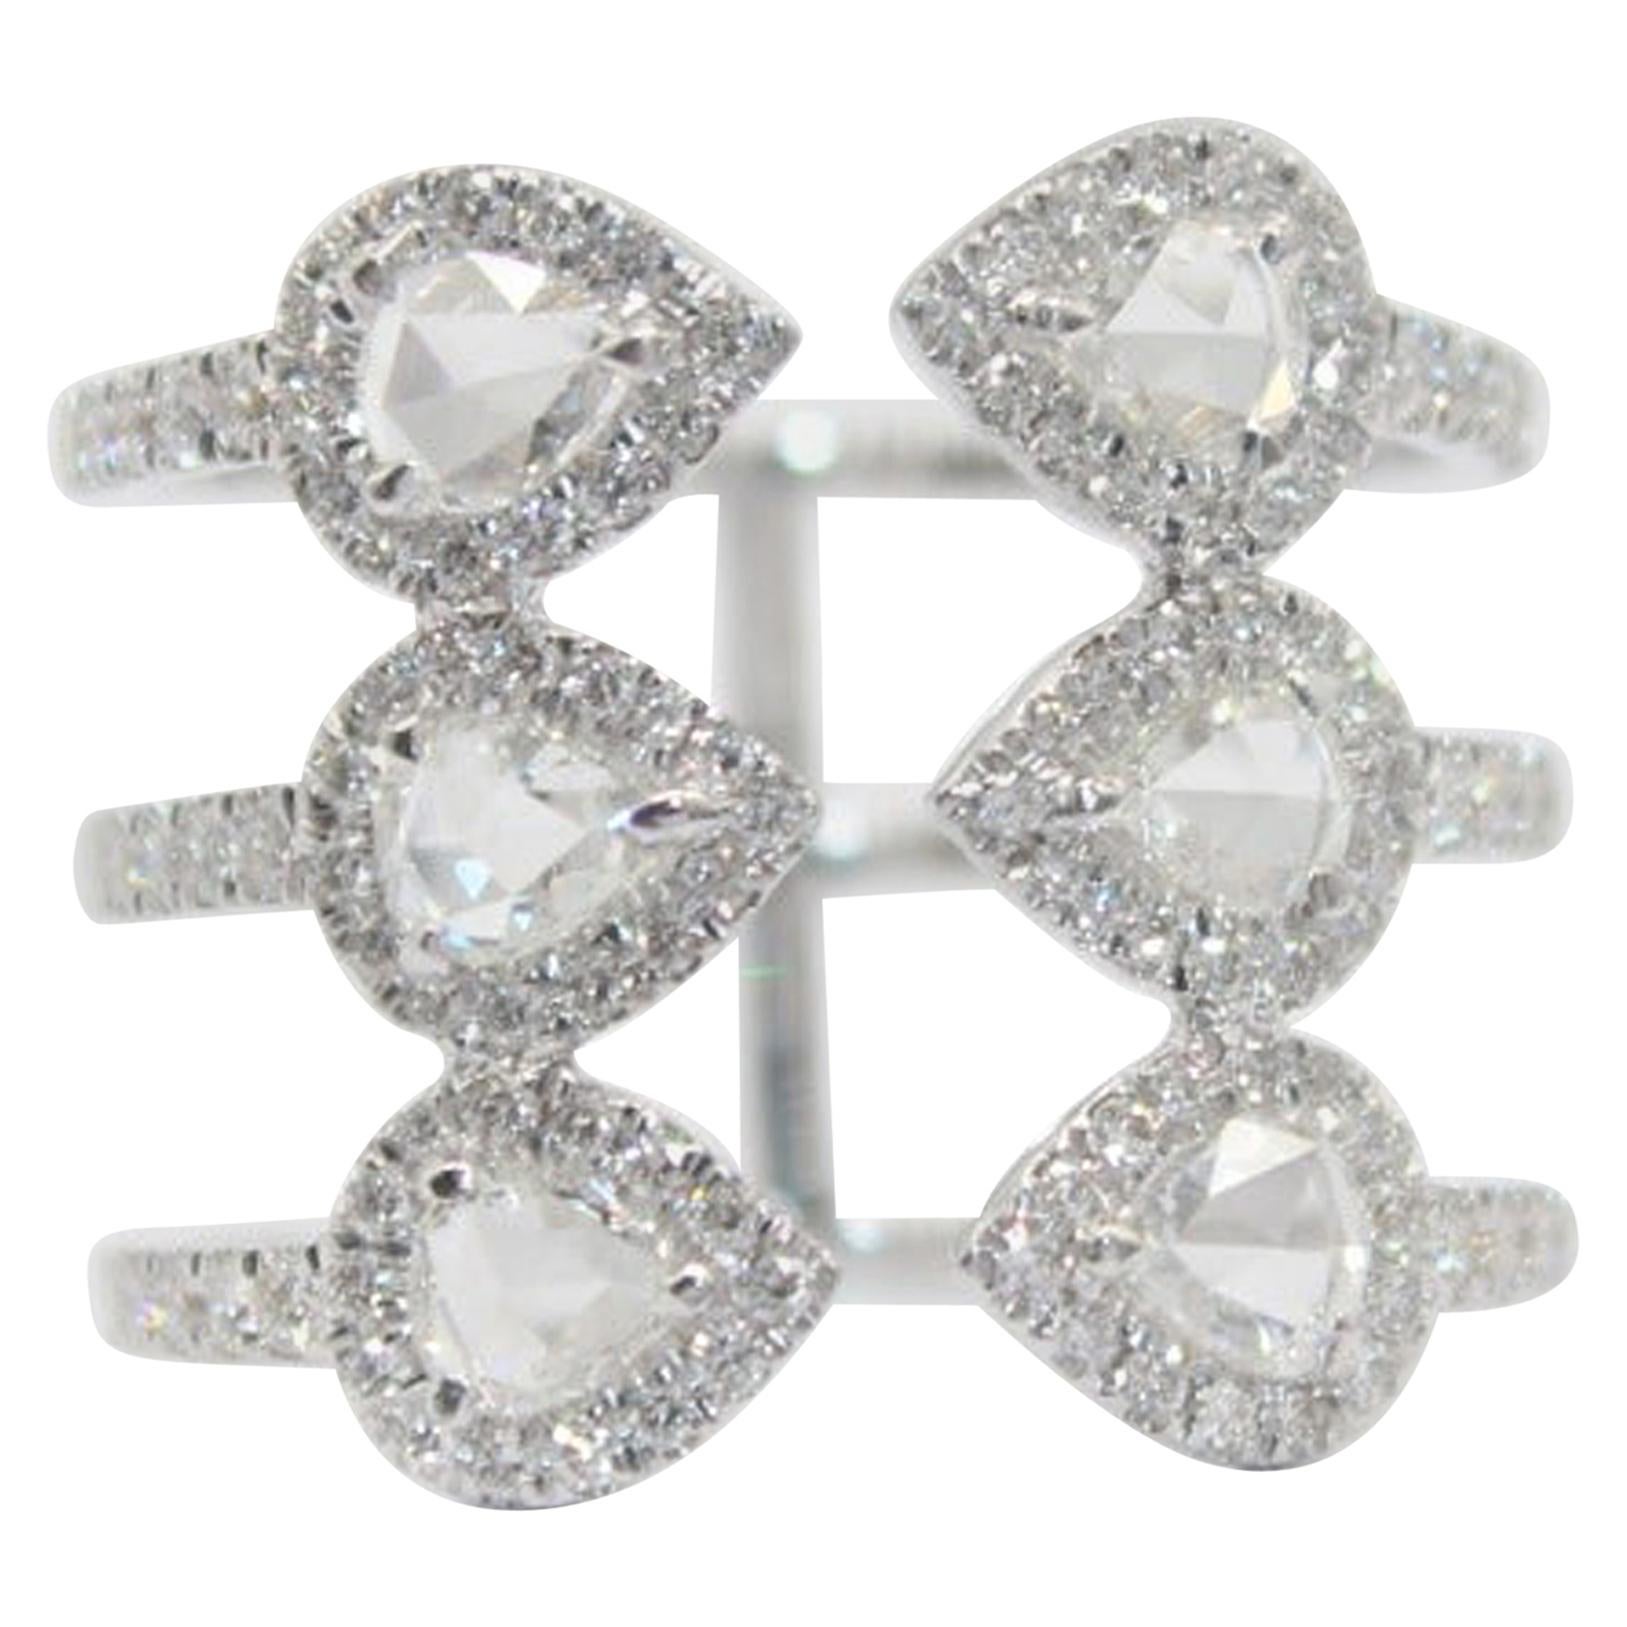 PANIM 1.27 Carat Rosecut Diamond Wrap Ring with in 18 Karat White Gold